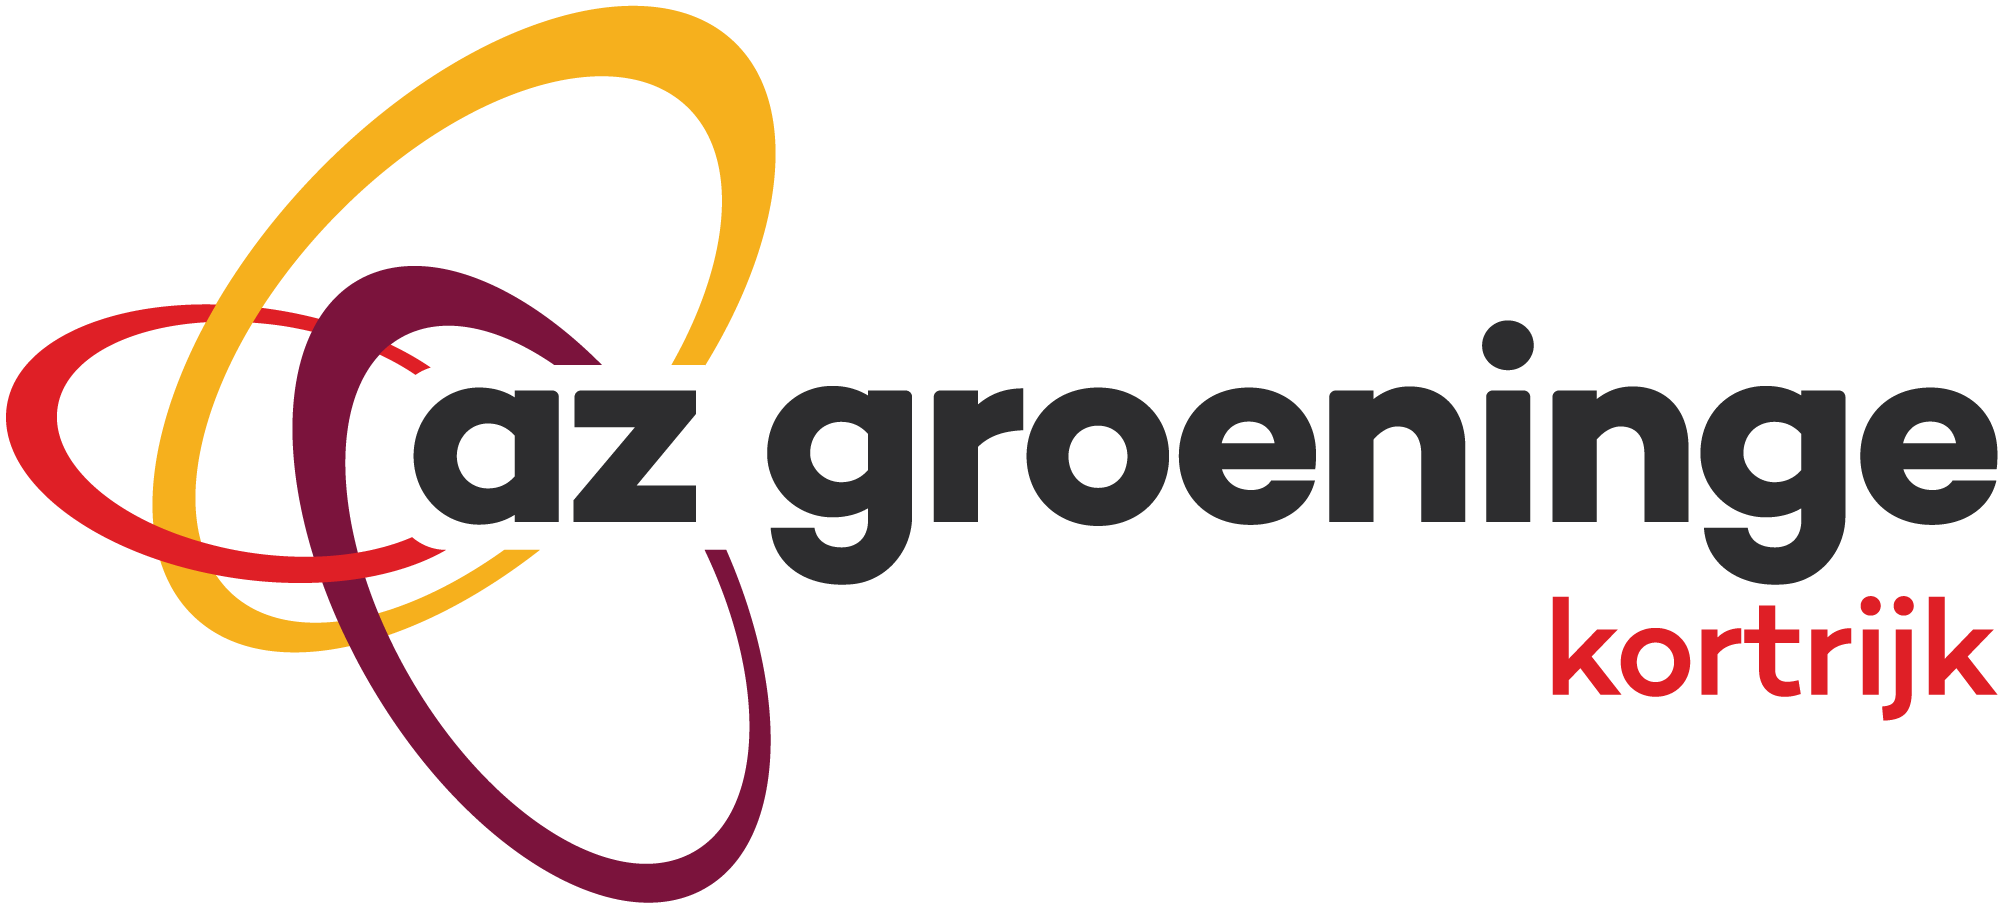 AZ Groeninge logo